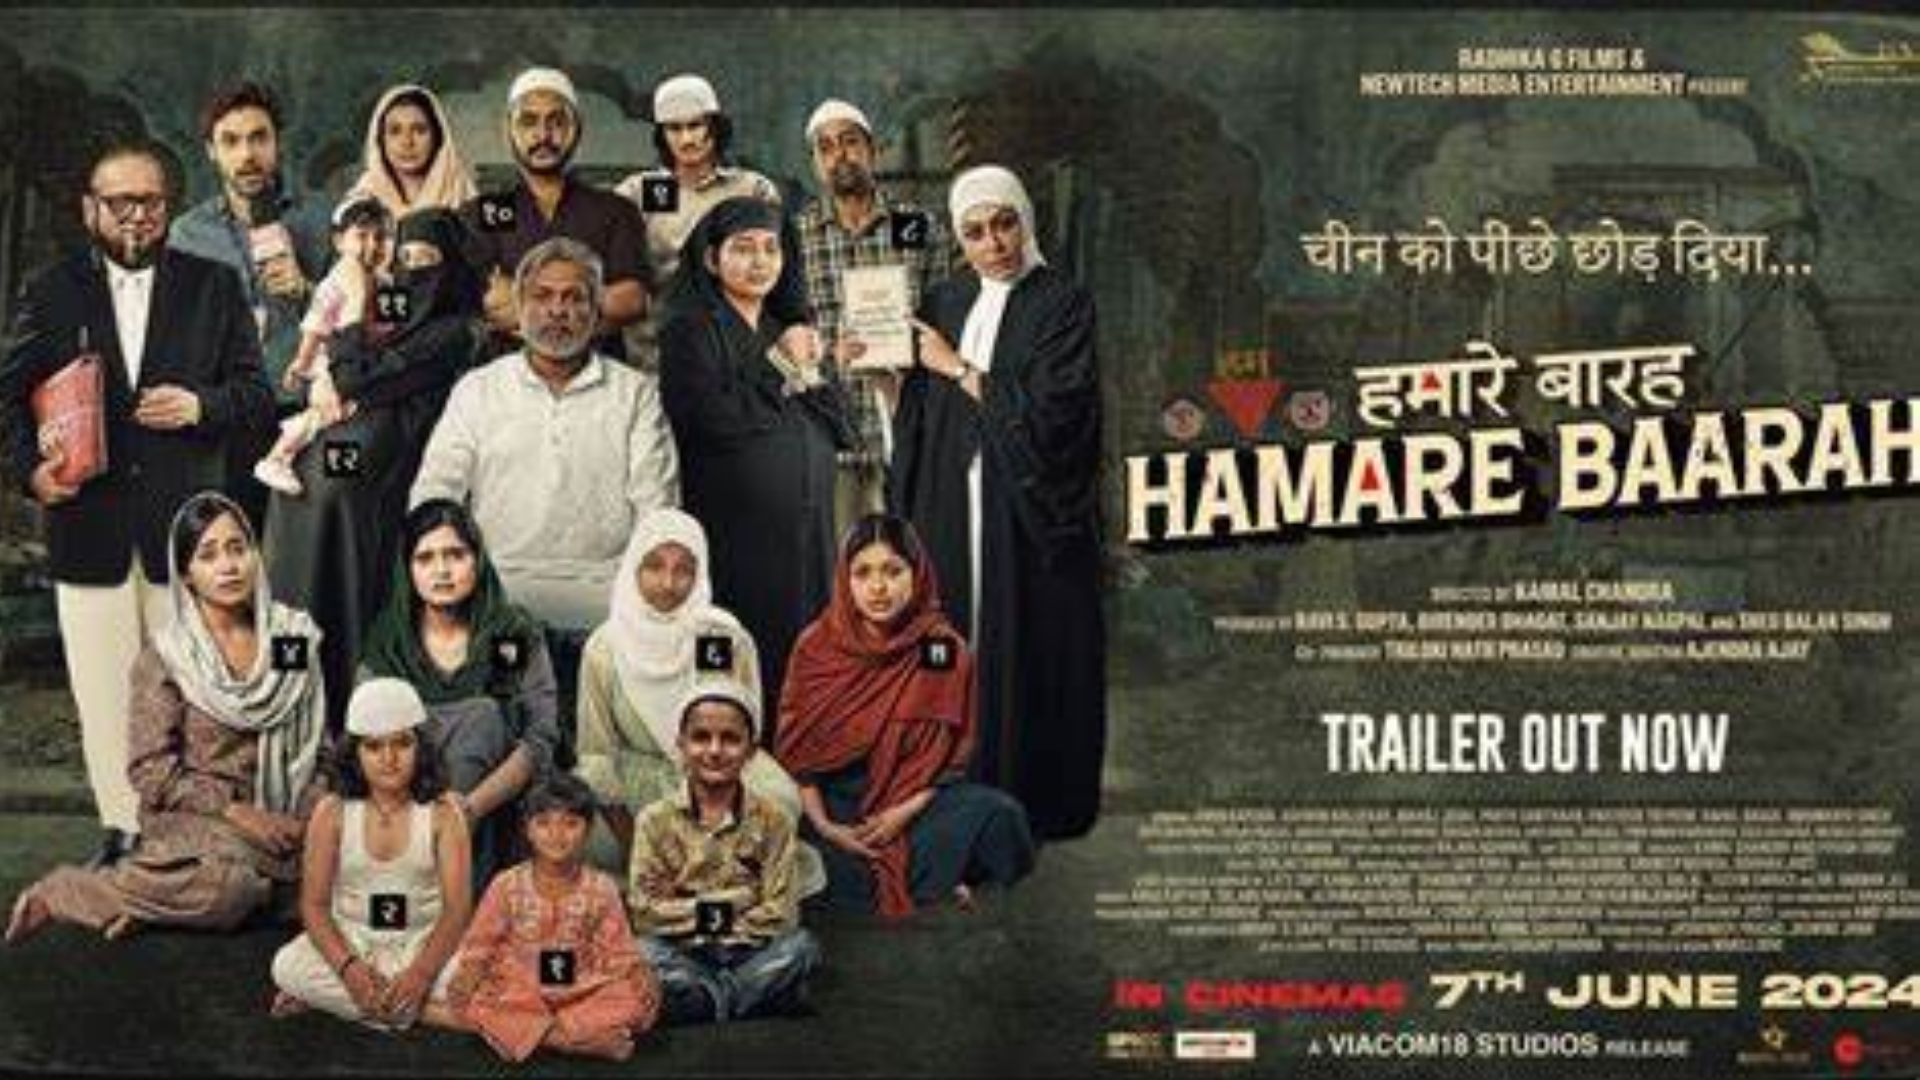 ‘Hamare Baarah’: Supreme Court Halts Release Of Controversial Film